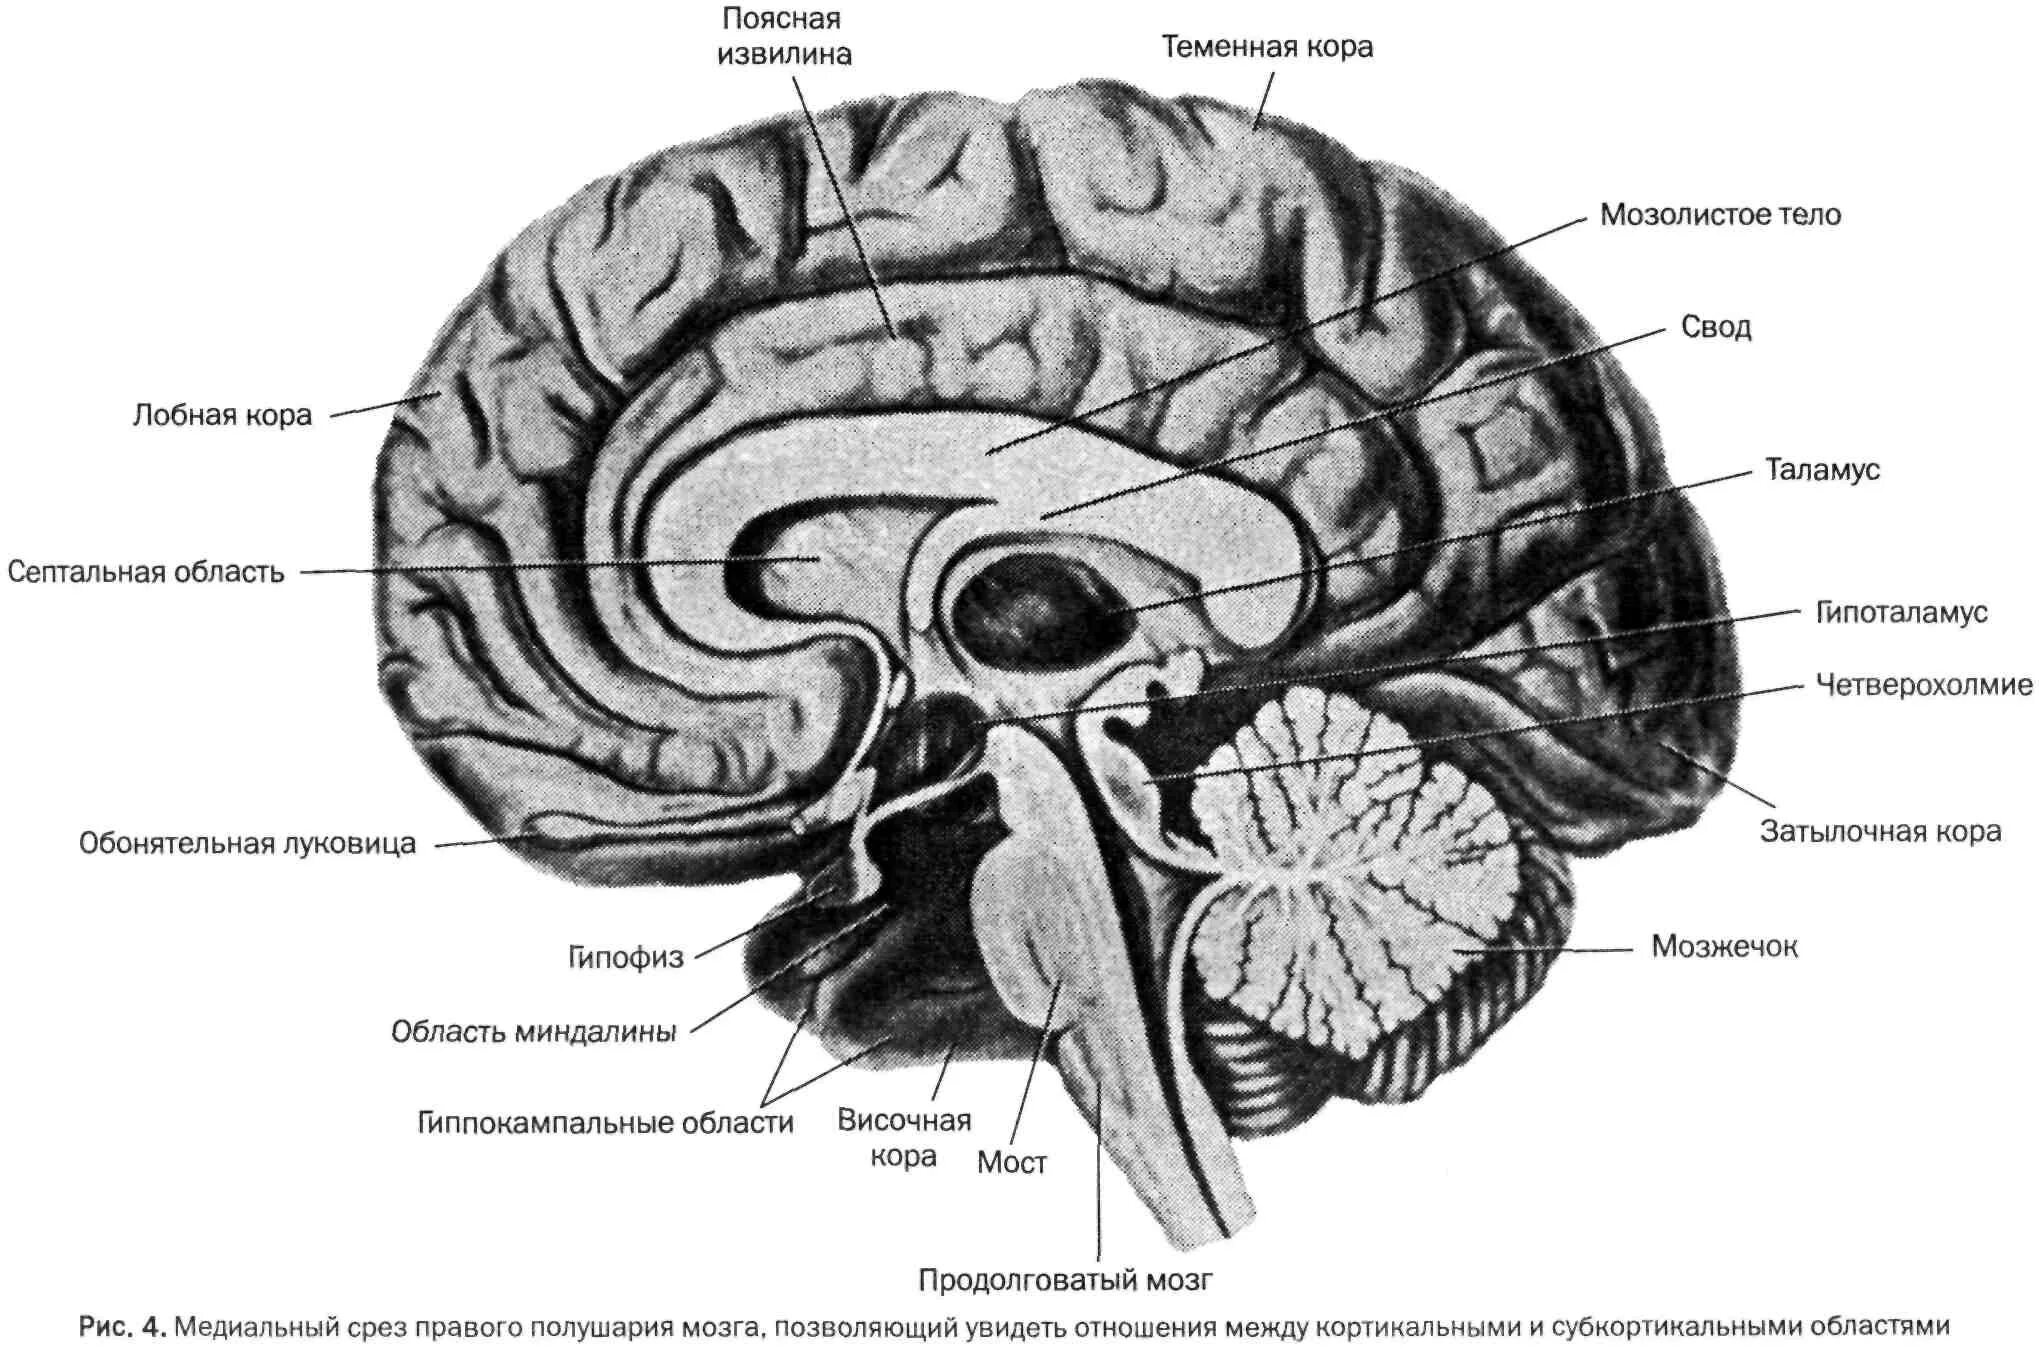 Сагитальный разрез головного мозга. Сагиттальный разрез головного мозга (медиальная поверхность). Отделы головного мозга на сагиттальном срезе. Складчатая поверхность головного мозга